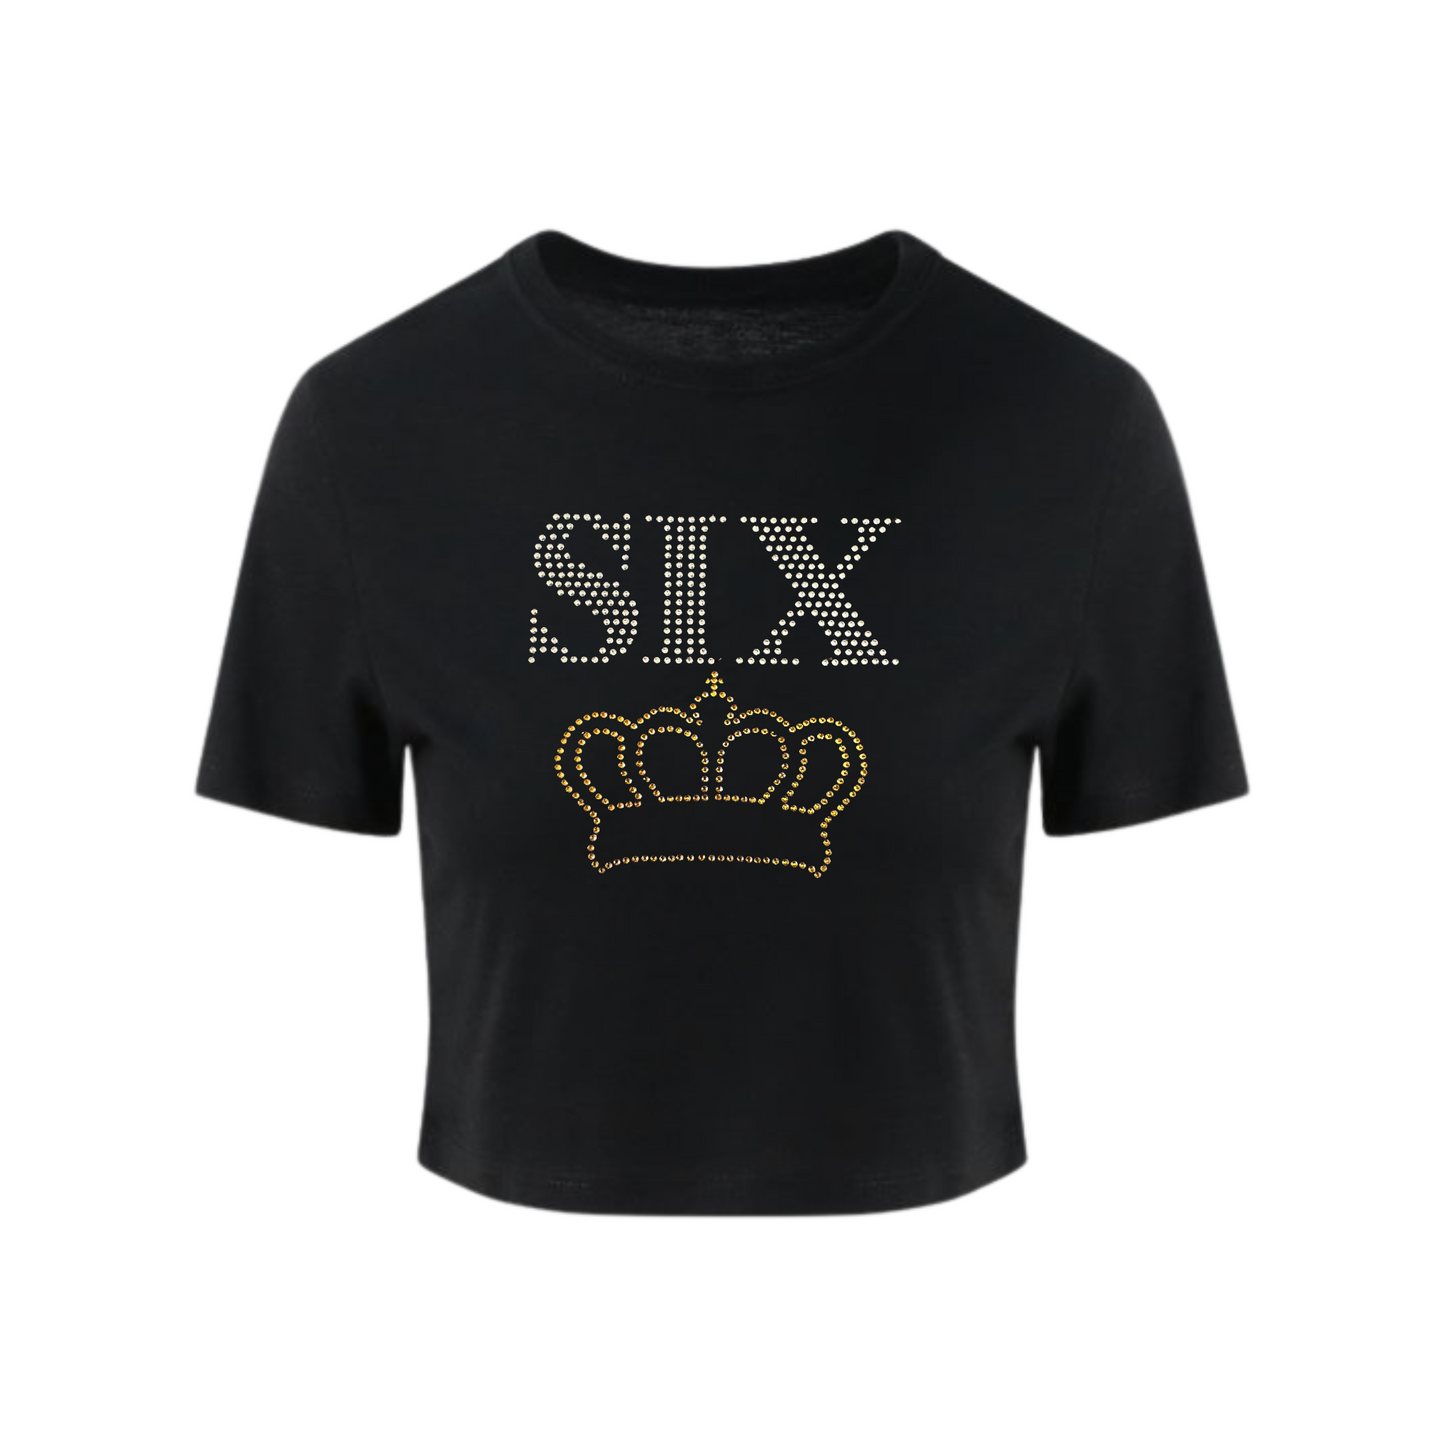 Six Crop T-shirt